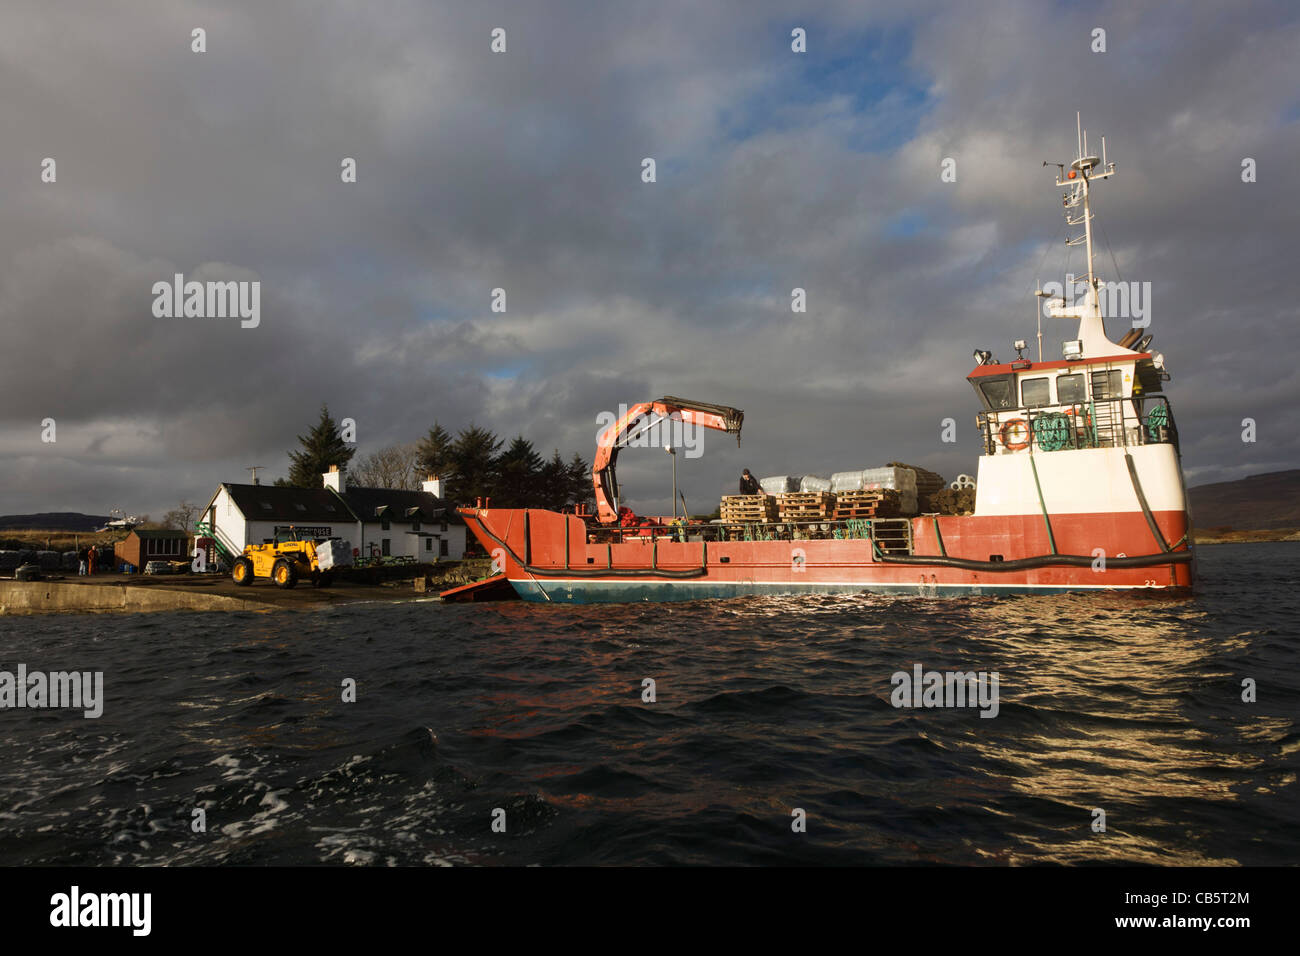 Baubedarf ausgelagert an Pier auf Ulva, Isle of Mull, Schottland. Stockfoto